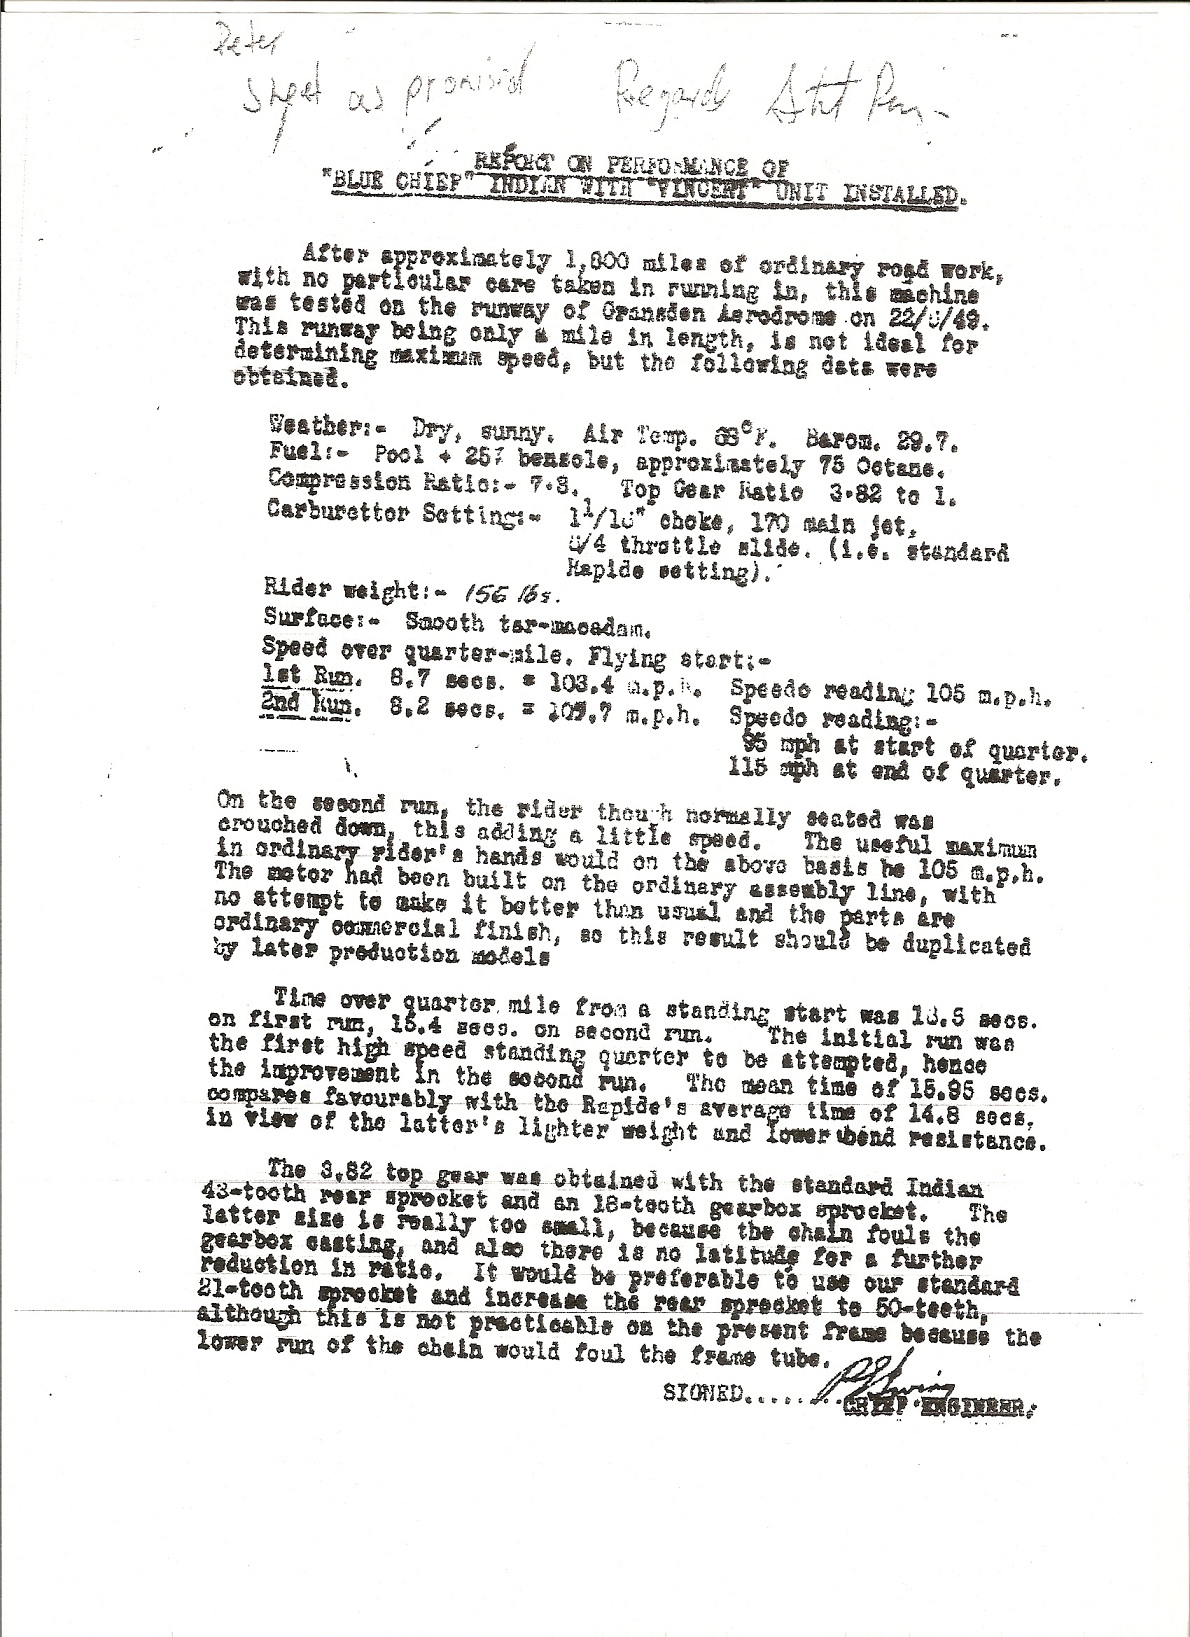 informe de phil irving sobre la prueba de la vindian el 22 de mayo de 1949 1